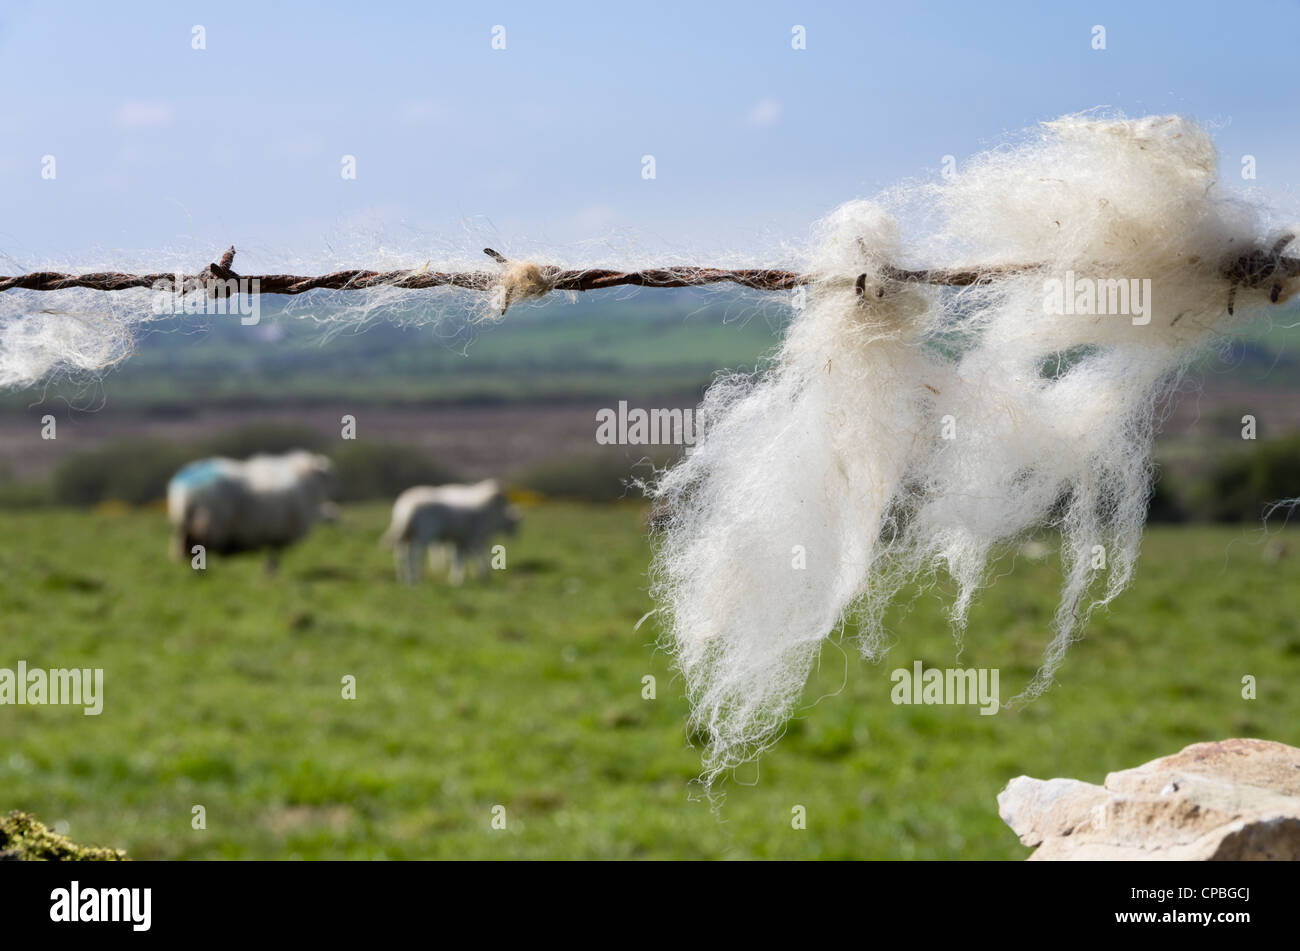 Schafwolle auf einen Stacheldrahtzaun mit Schafen im Feld darüber hinaus gefangen. UK, Großbritannien Stockfoto